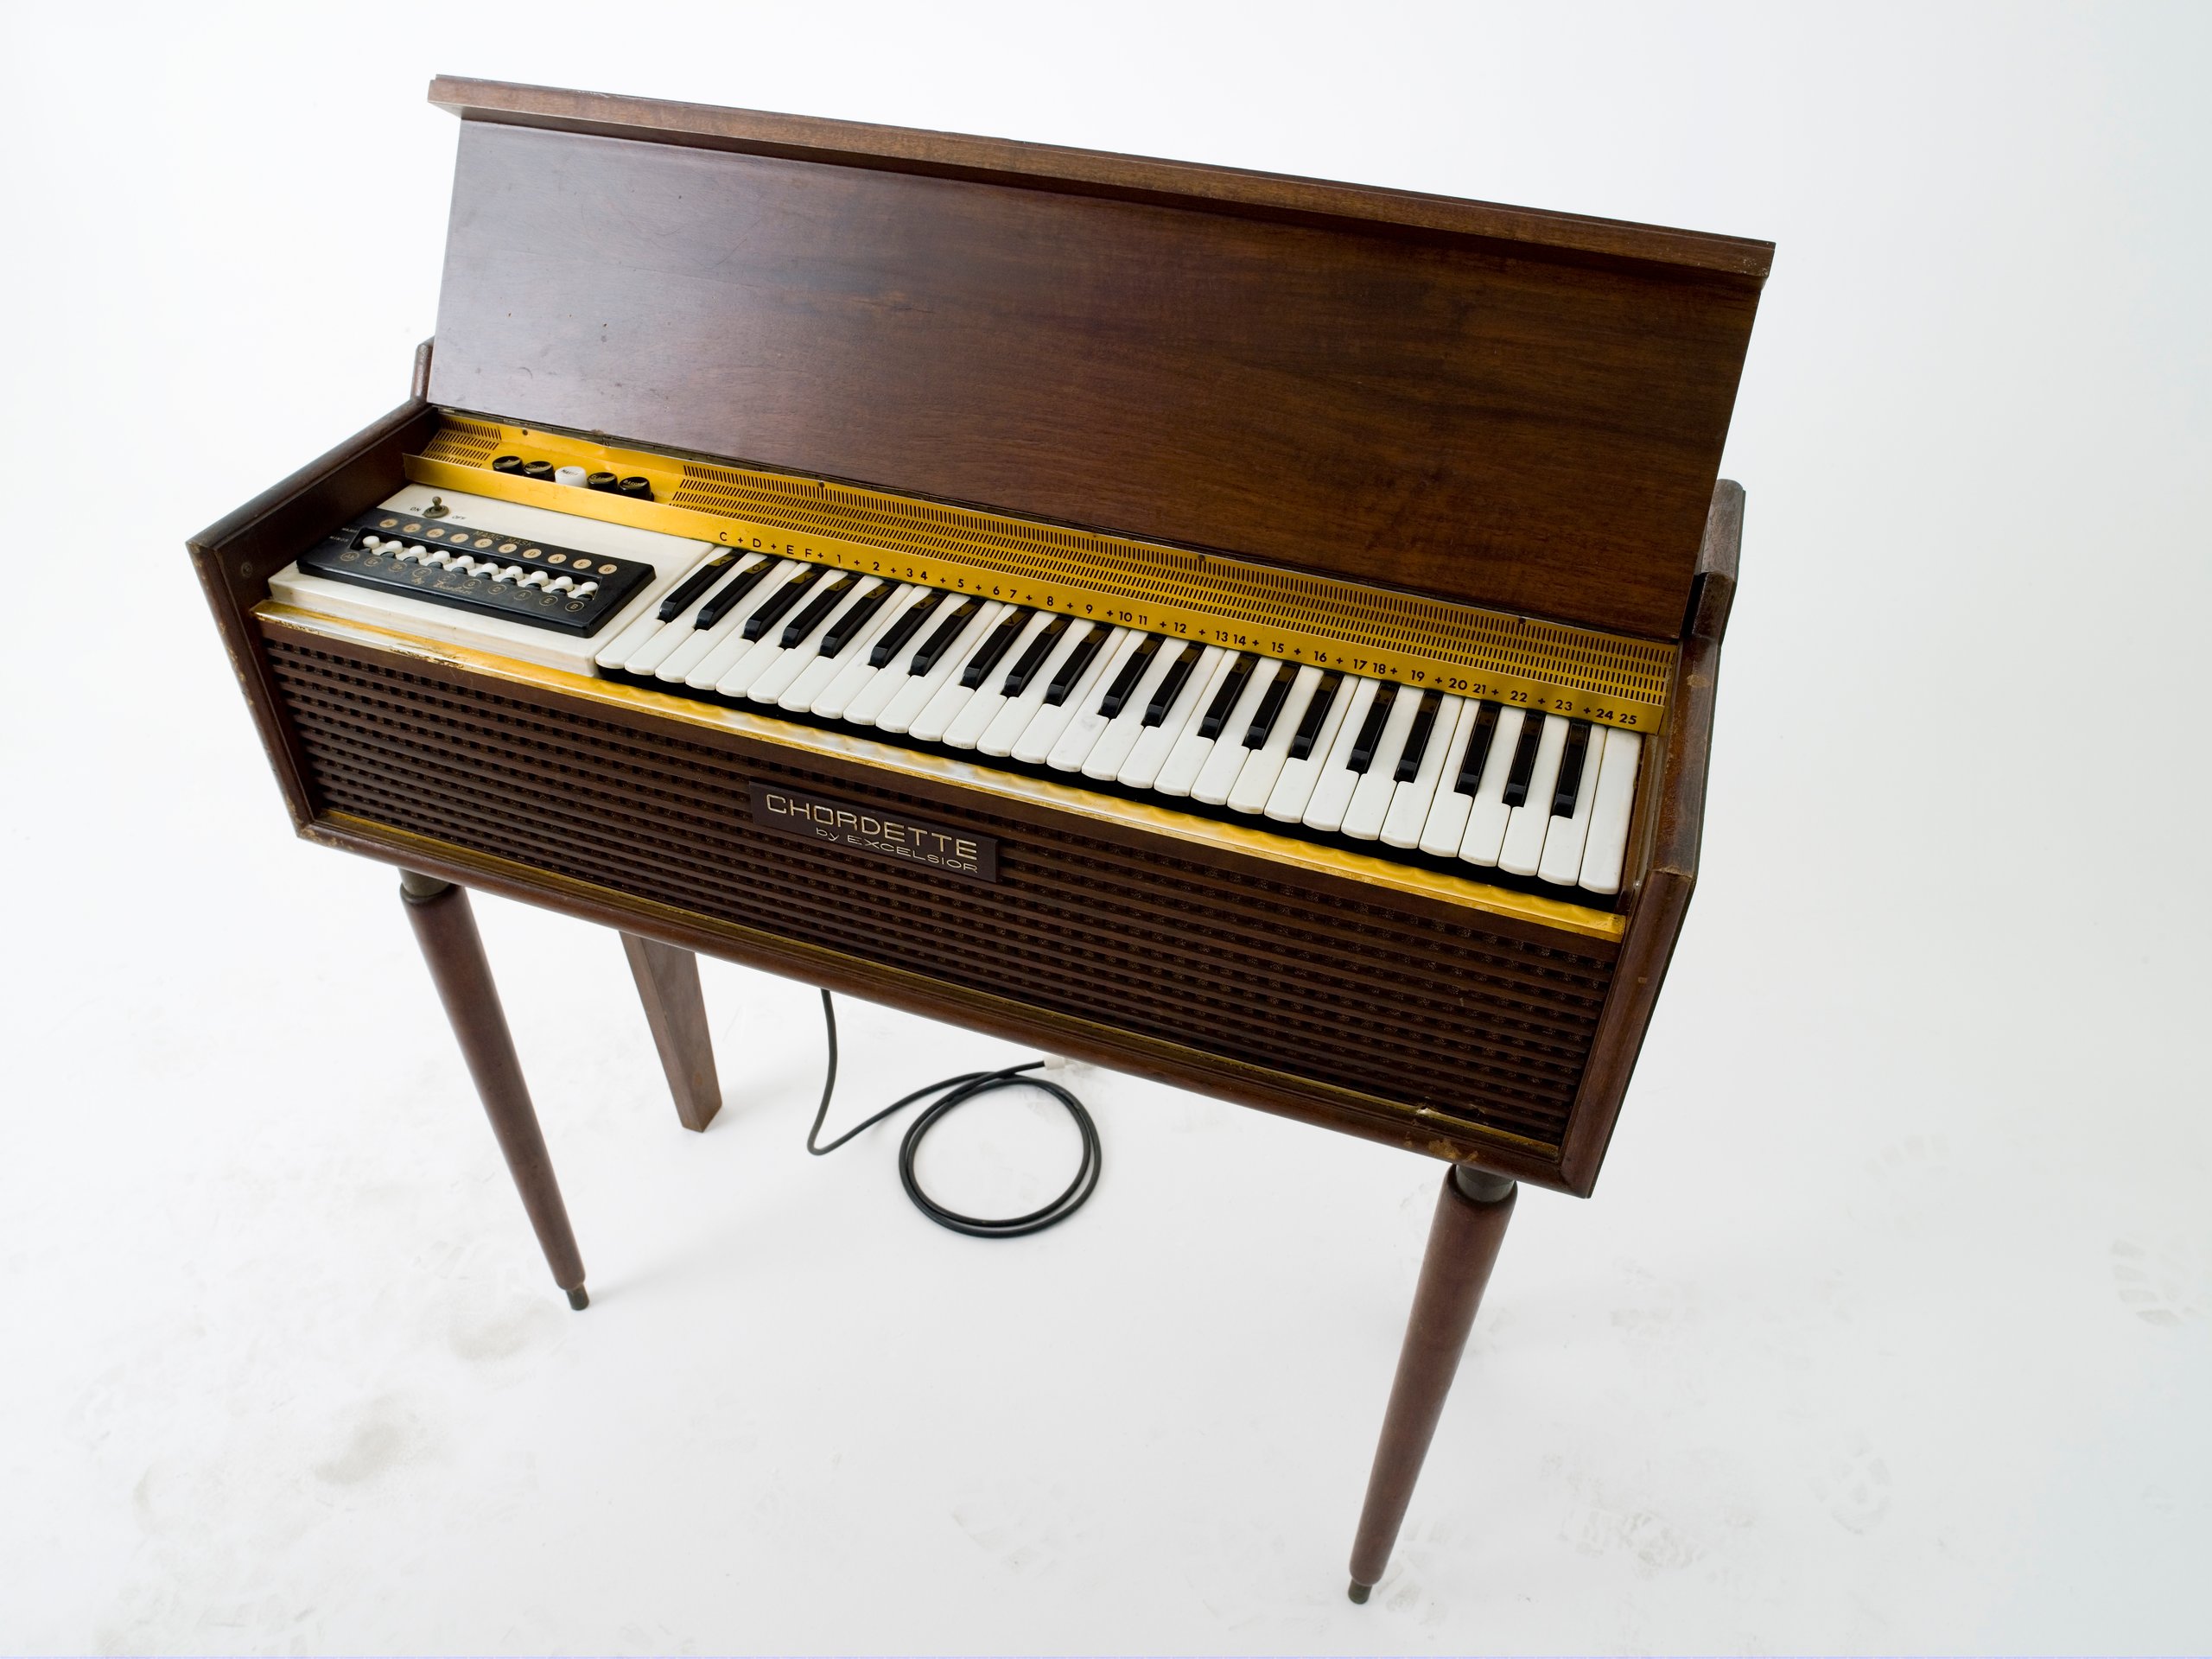 Chordette organ design by Excelsior